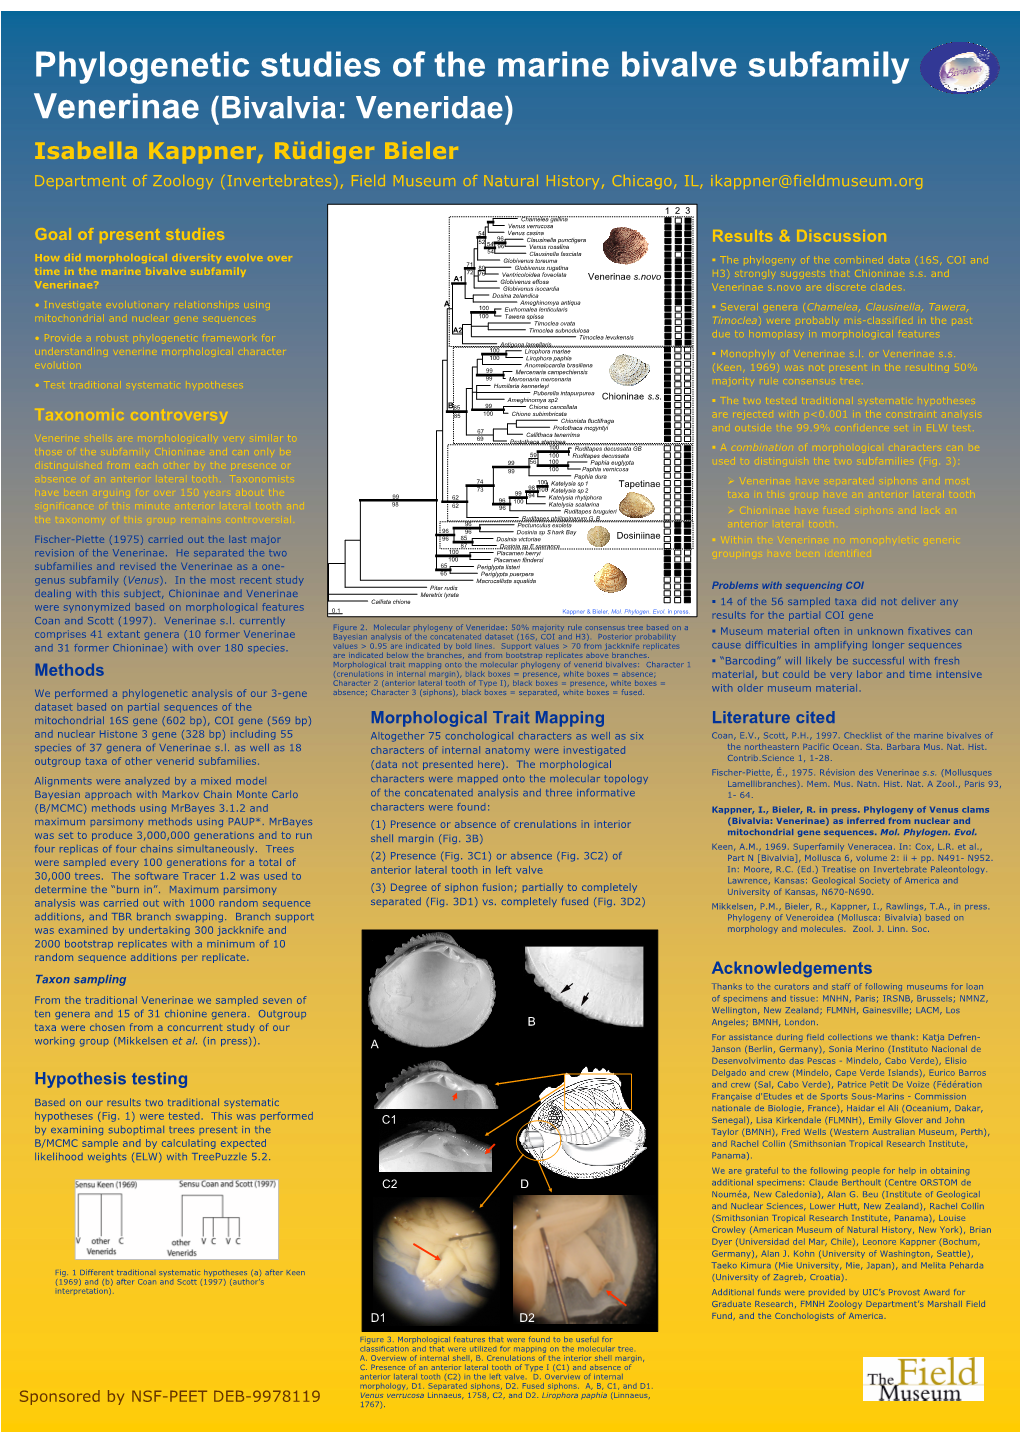 Phylogenetic Studies of the Marine Bivalve Subfamily